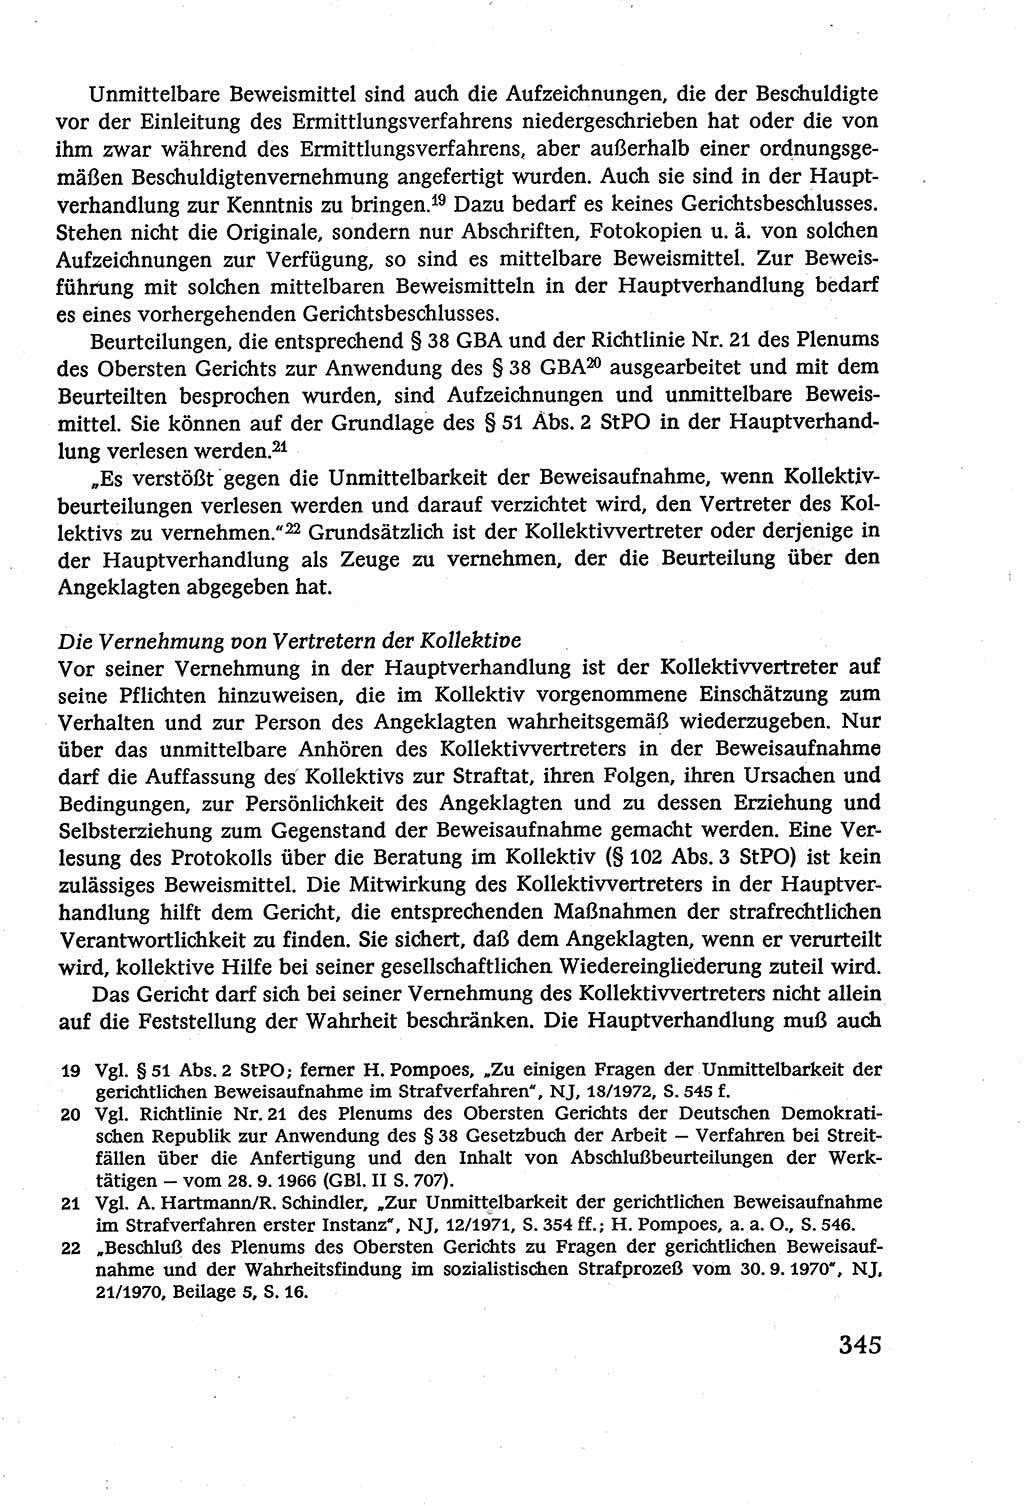 Strafverfahrensrecht [Deutsche Demokratische Republik (DDR)], Lehrbuch 1977, Seite 345 (Strafverf.-R. DDR Lb. 1977, S. 345)